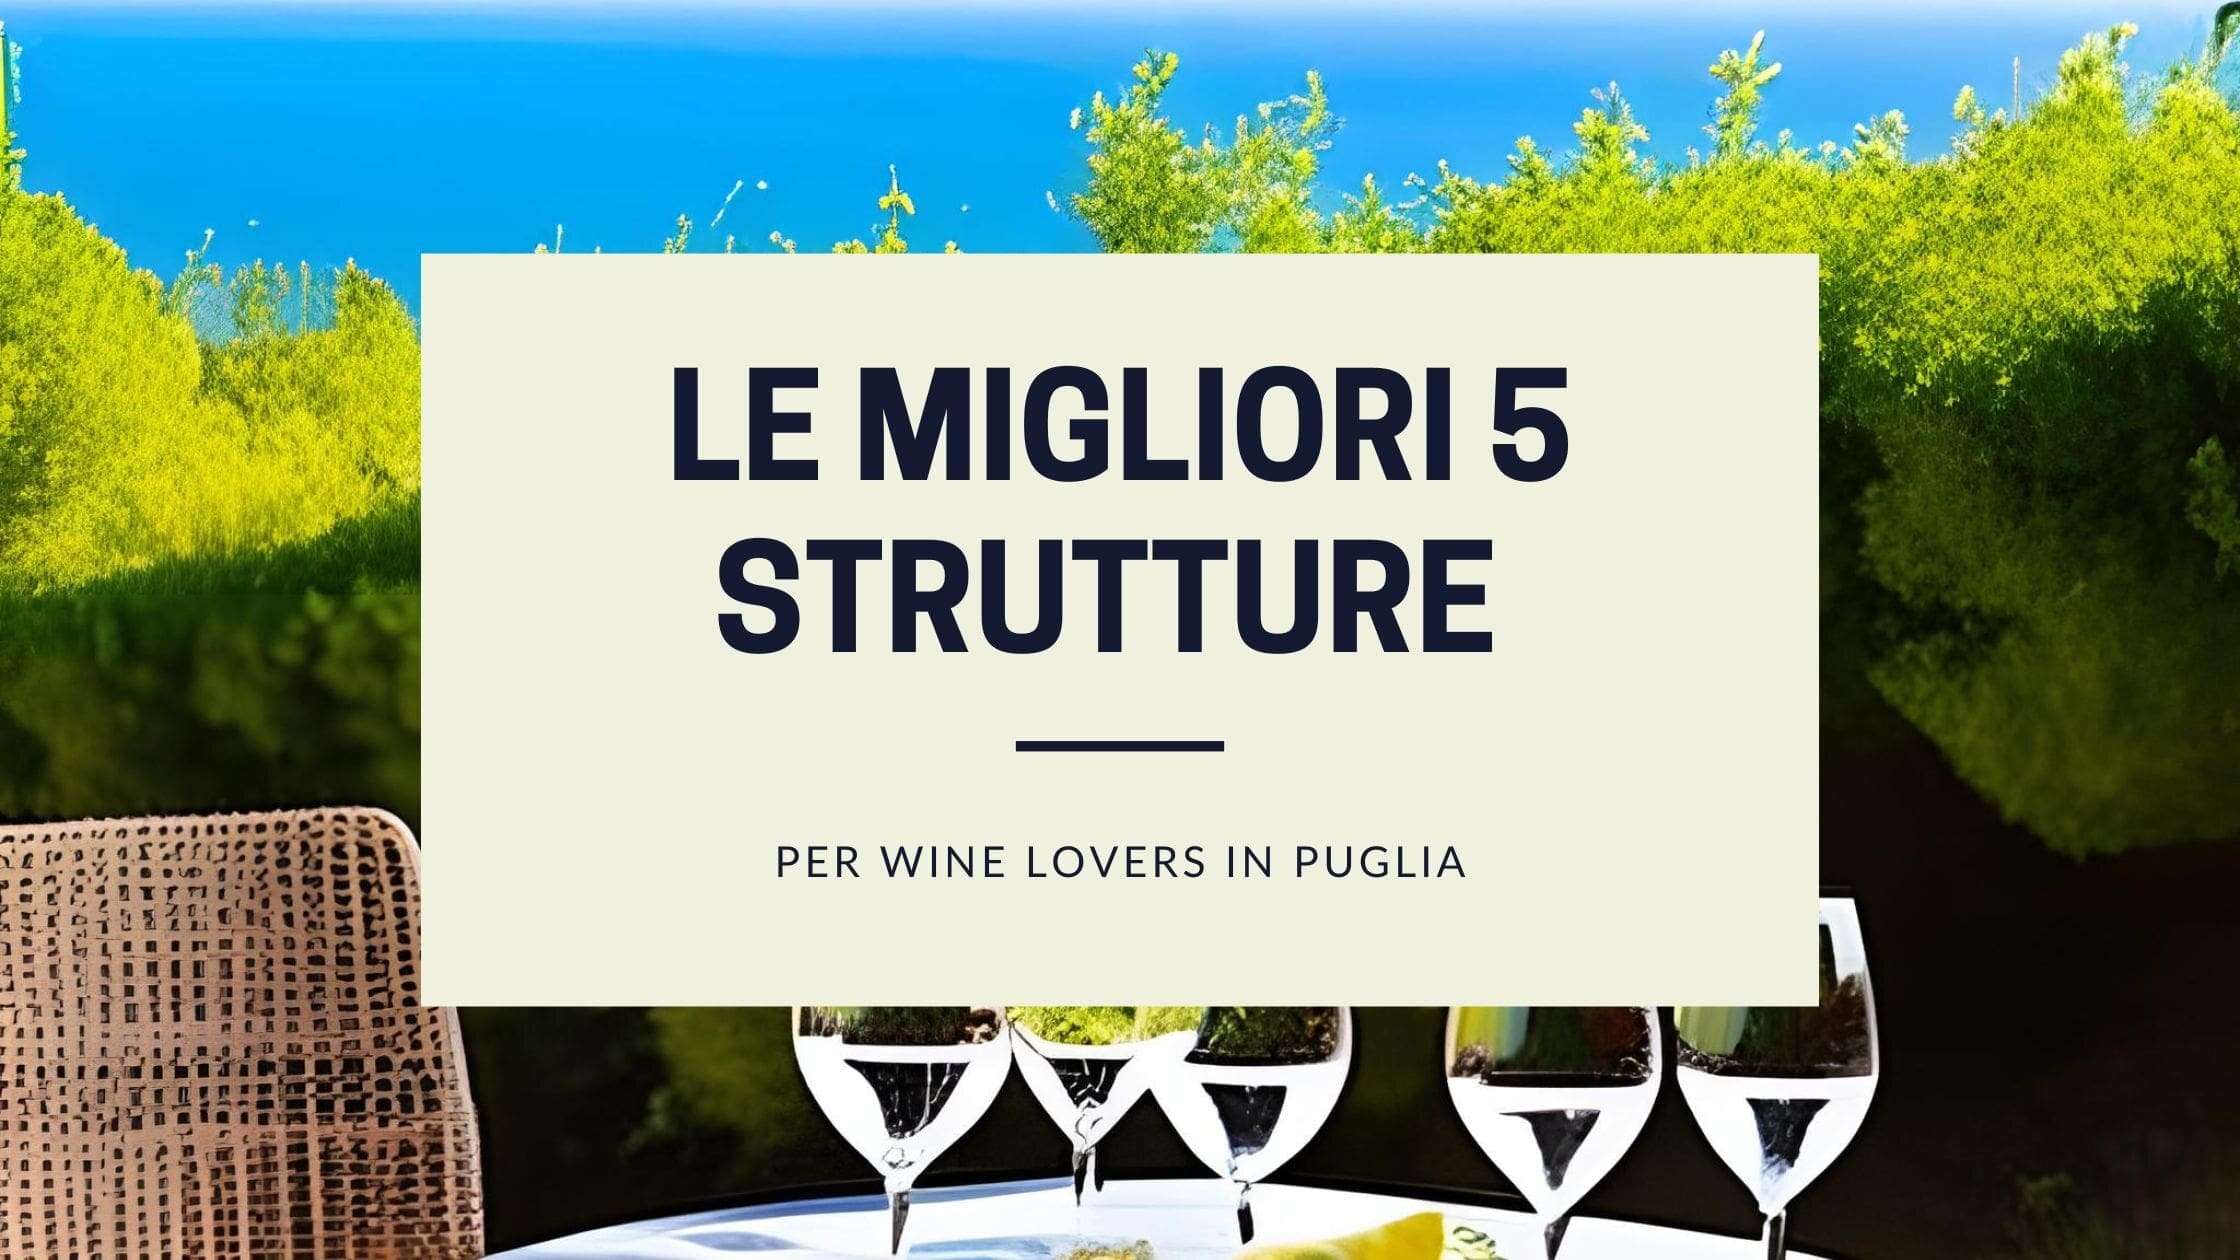 Le migliori 5 strutture per wine lovers in Puglia